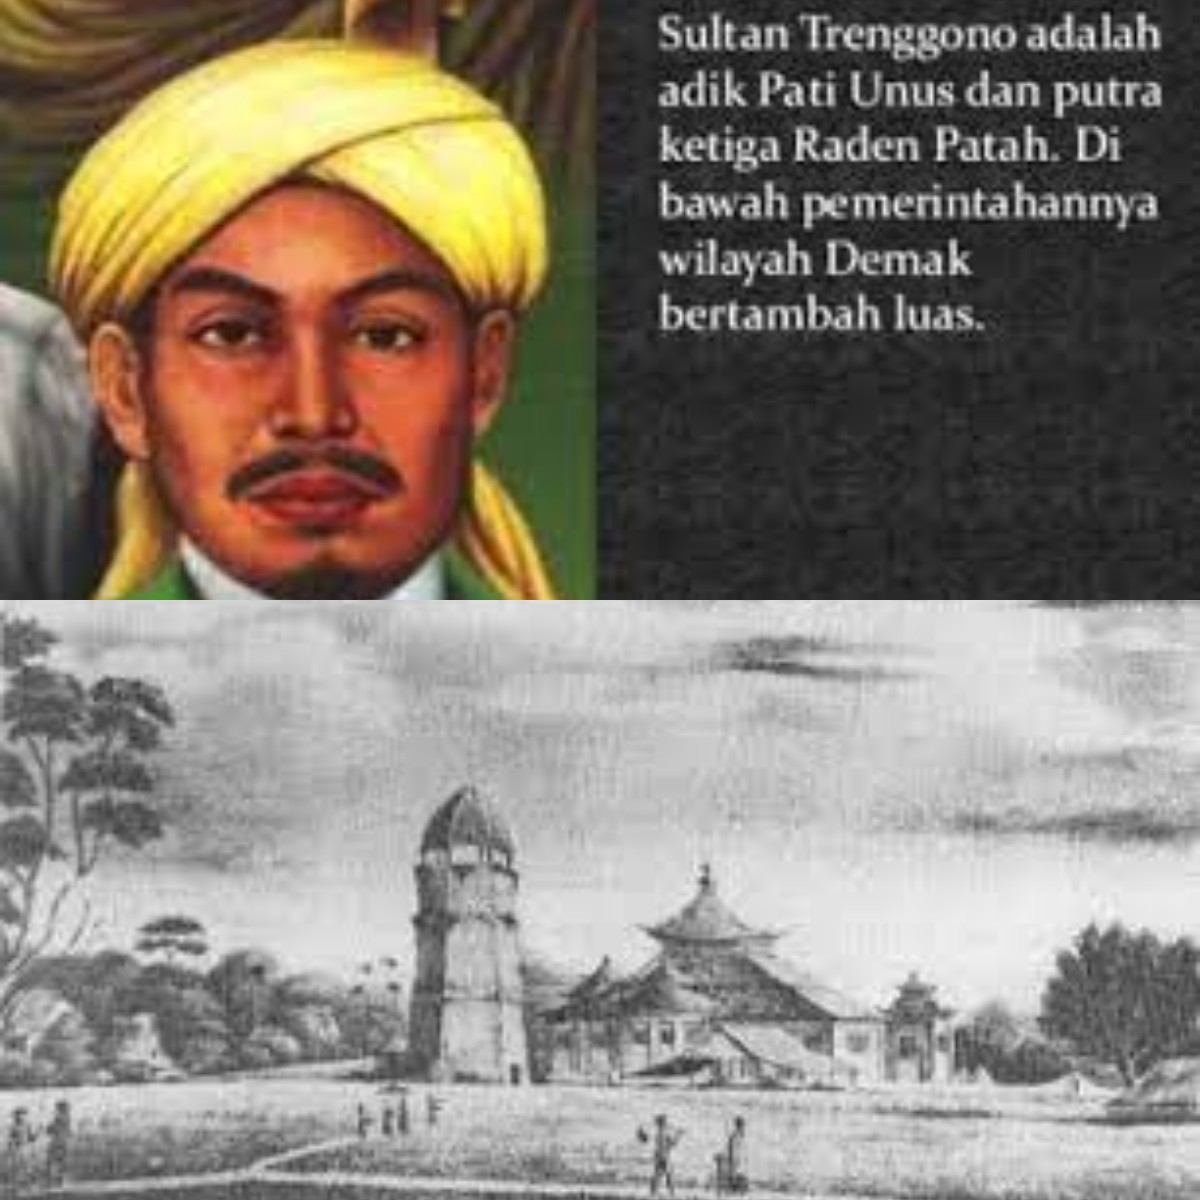 Dibalik Kejayaan Kesultanan Demak di Nusantara, Ternyata Inilah Peran Penting Sultan Trenggana